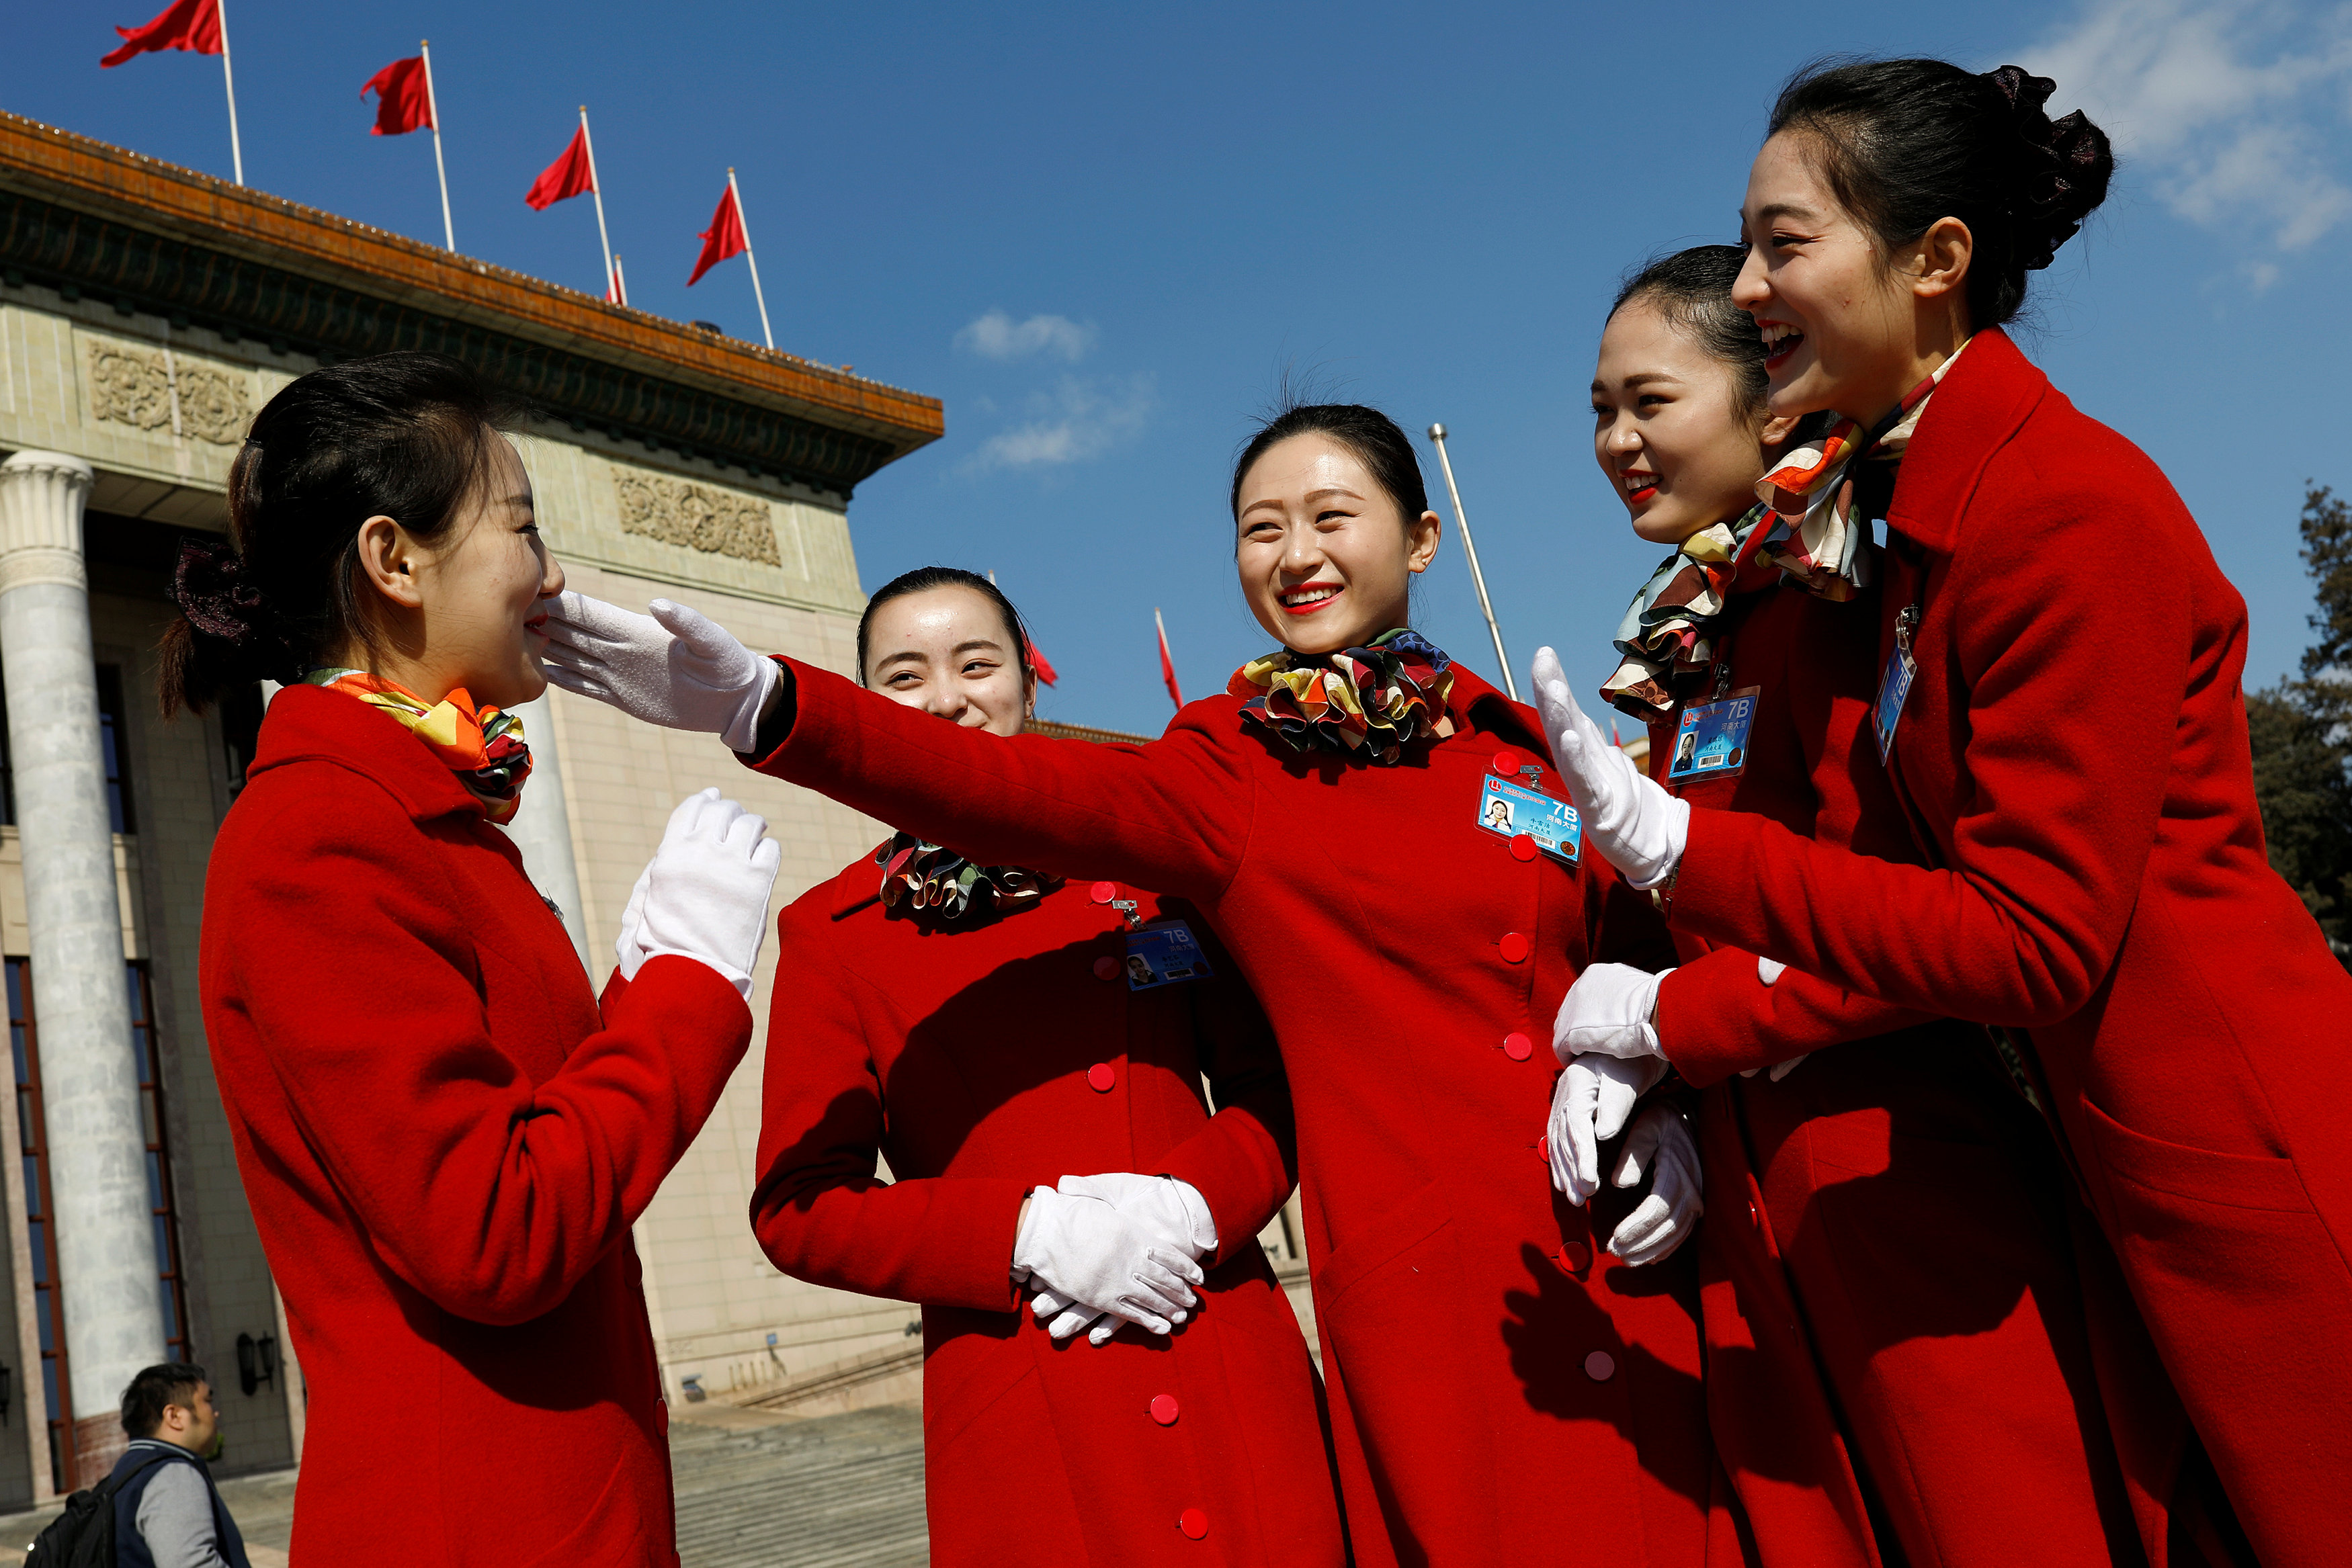 فتيات يشاركن فى احتفالات الجلسة الافتتاحية للبرلمان فى بكين